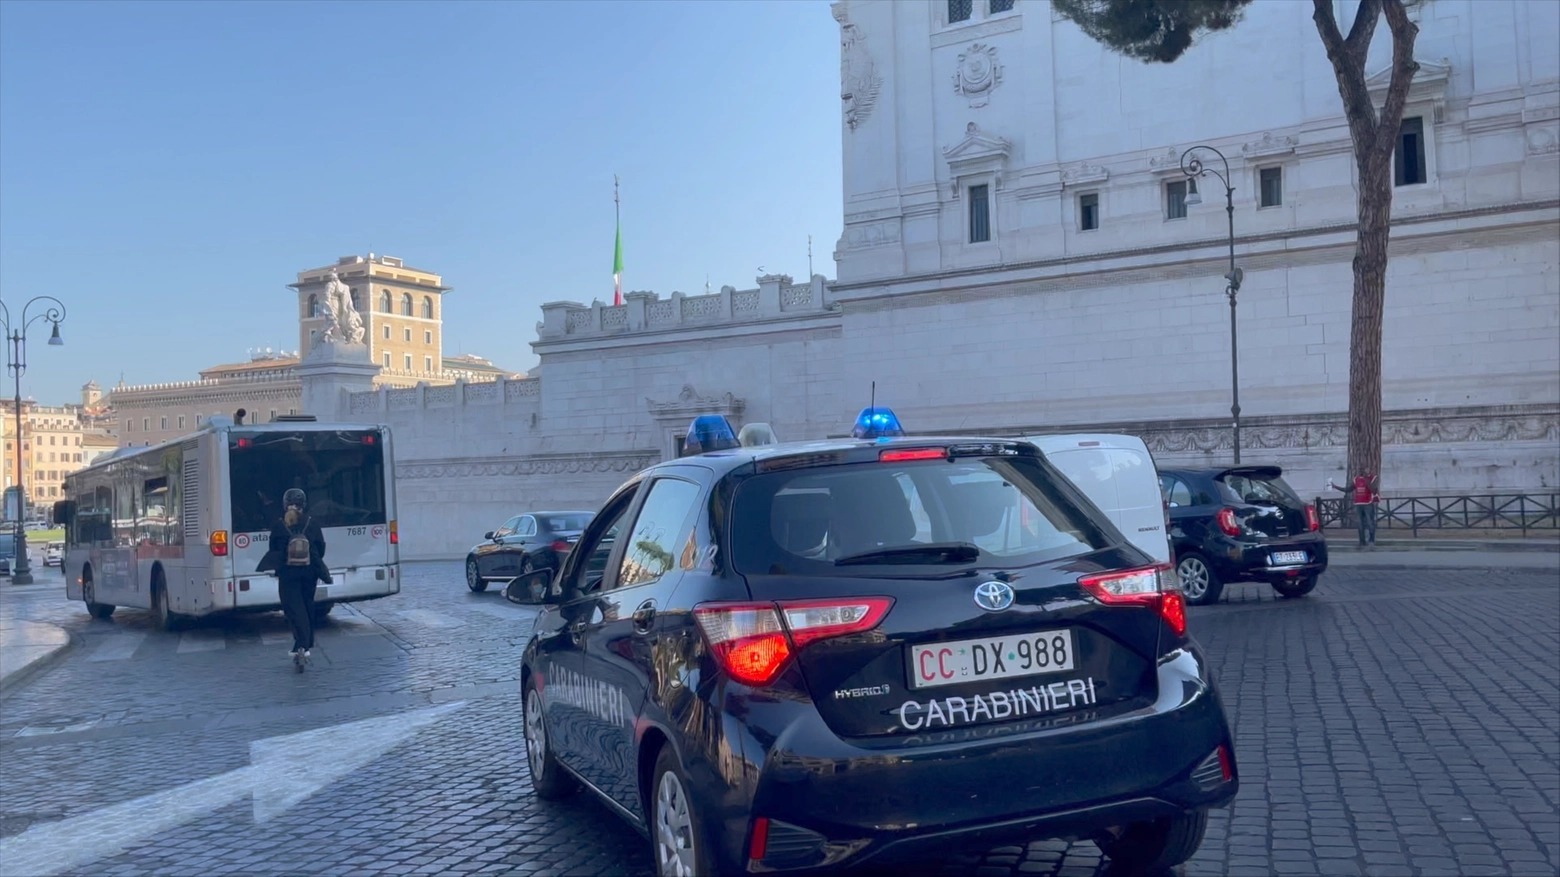 L'episodio si è verificato su un autobus a Roma: sono intervenuti i carabinieri